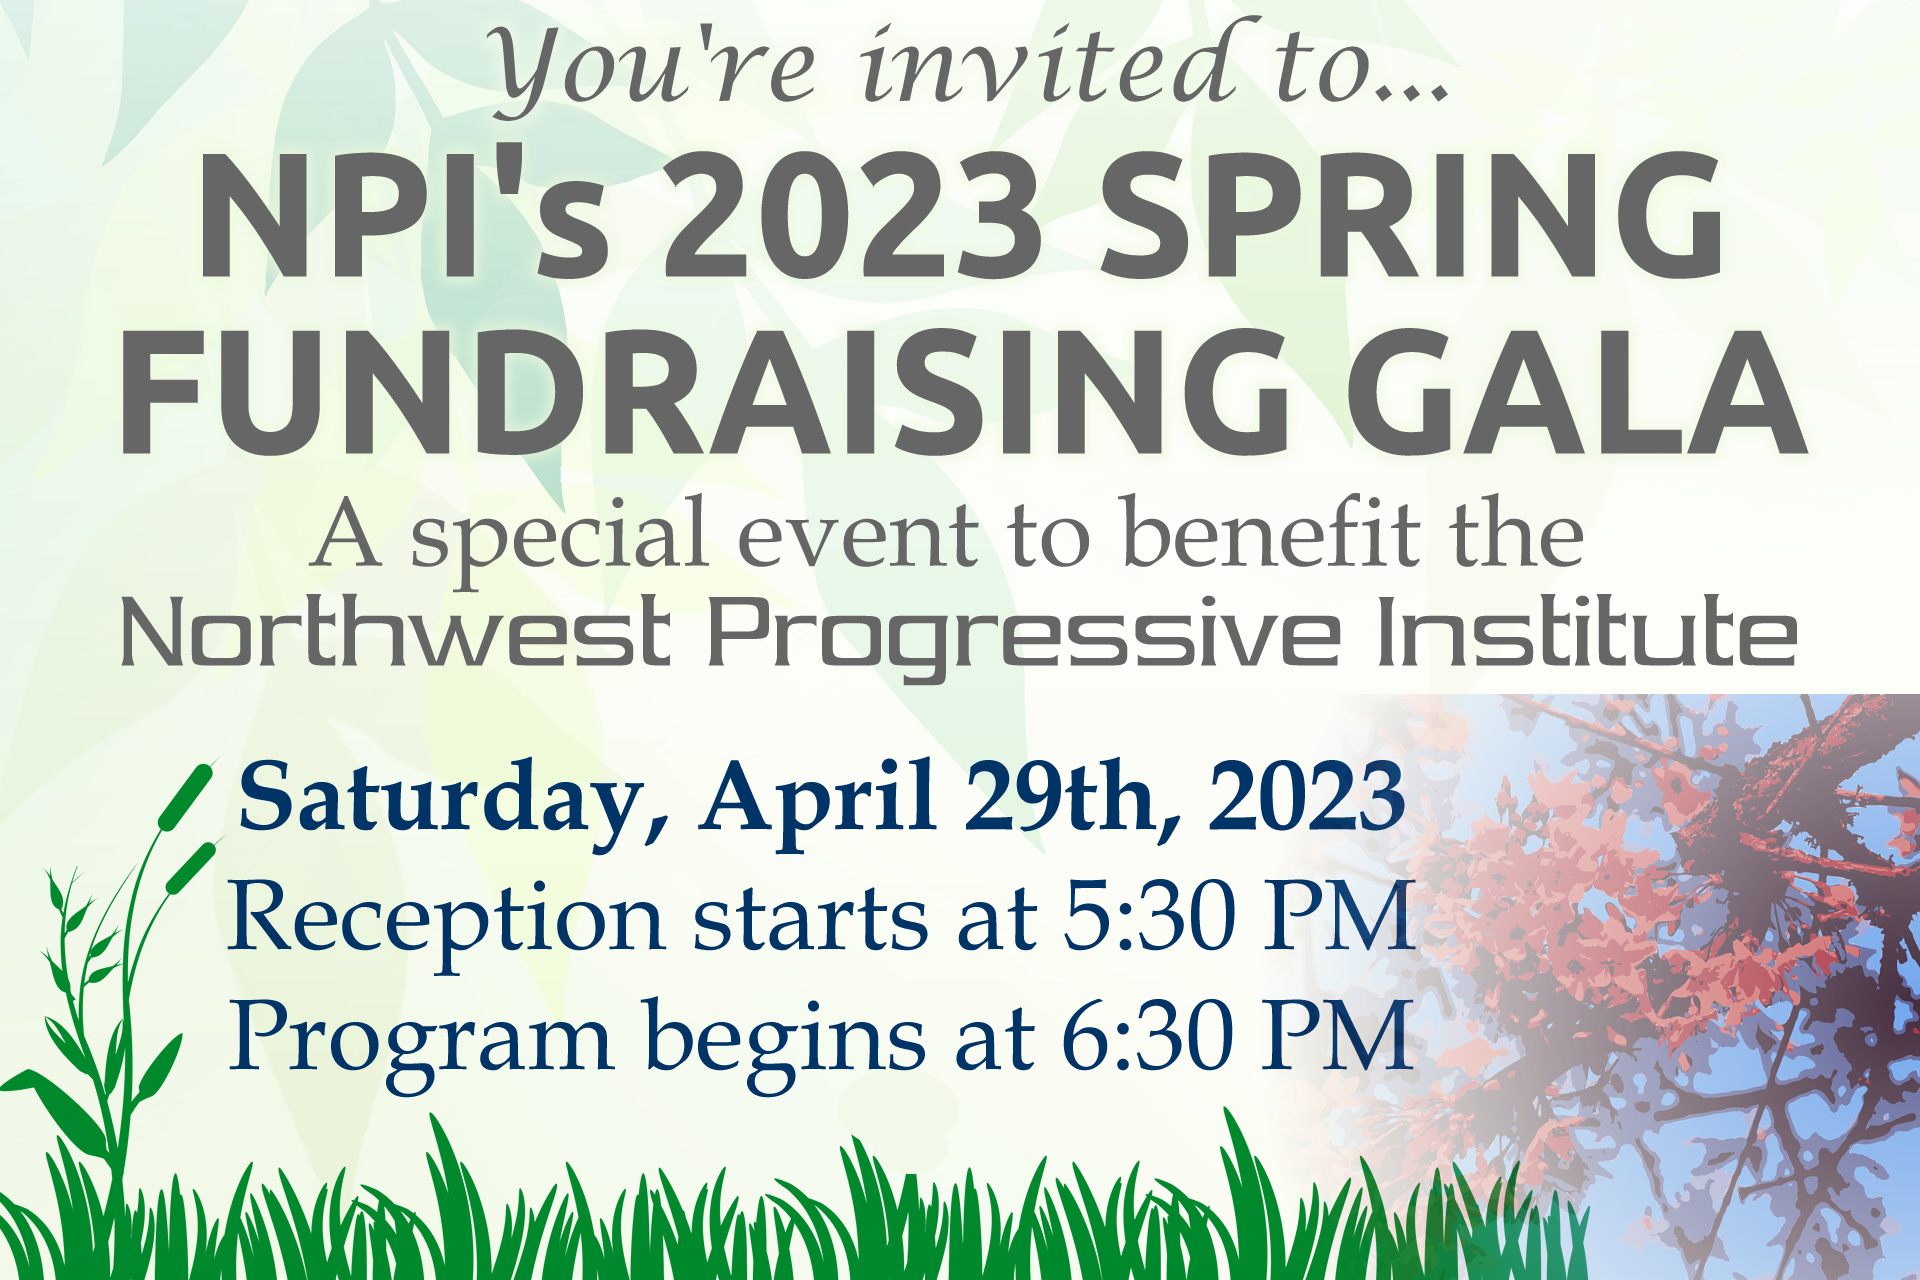 Invitation to NPI's 2023 Spring Fundraising Gala